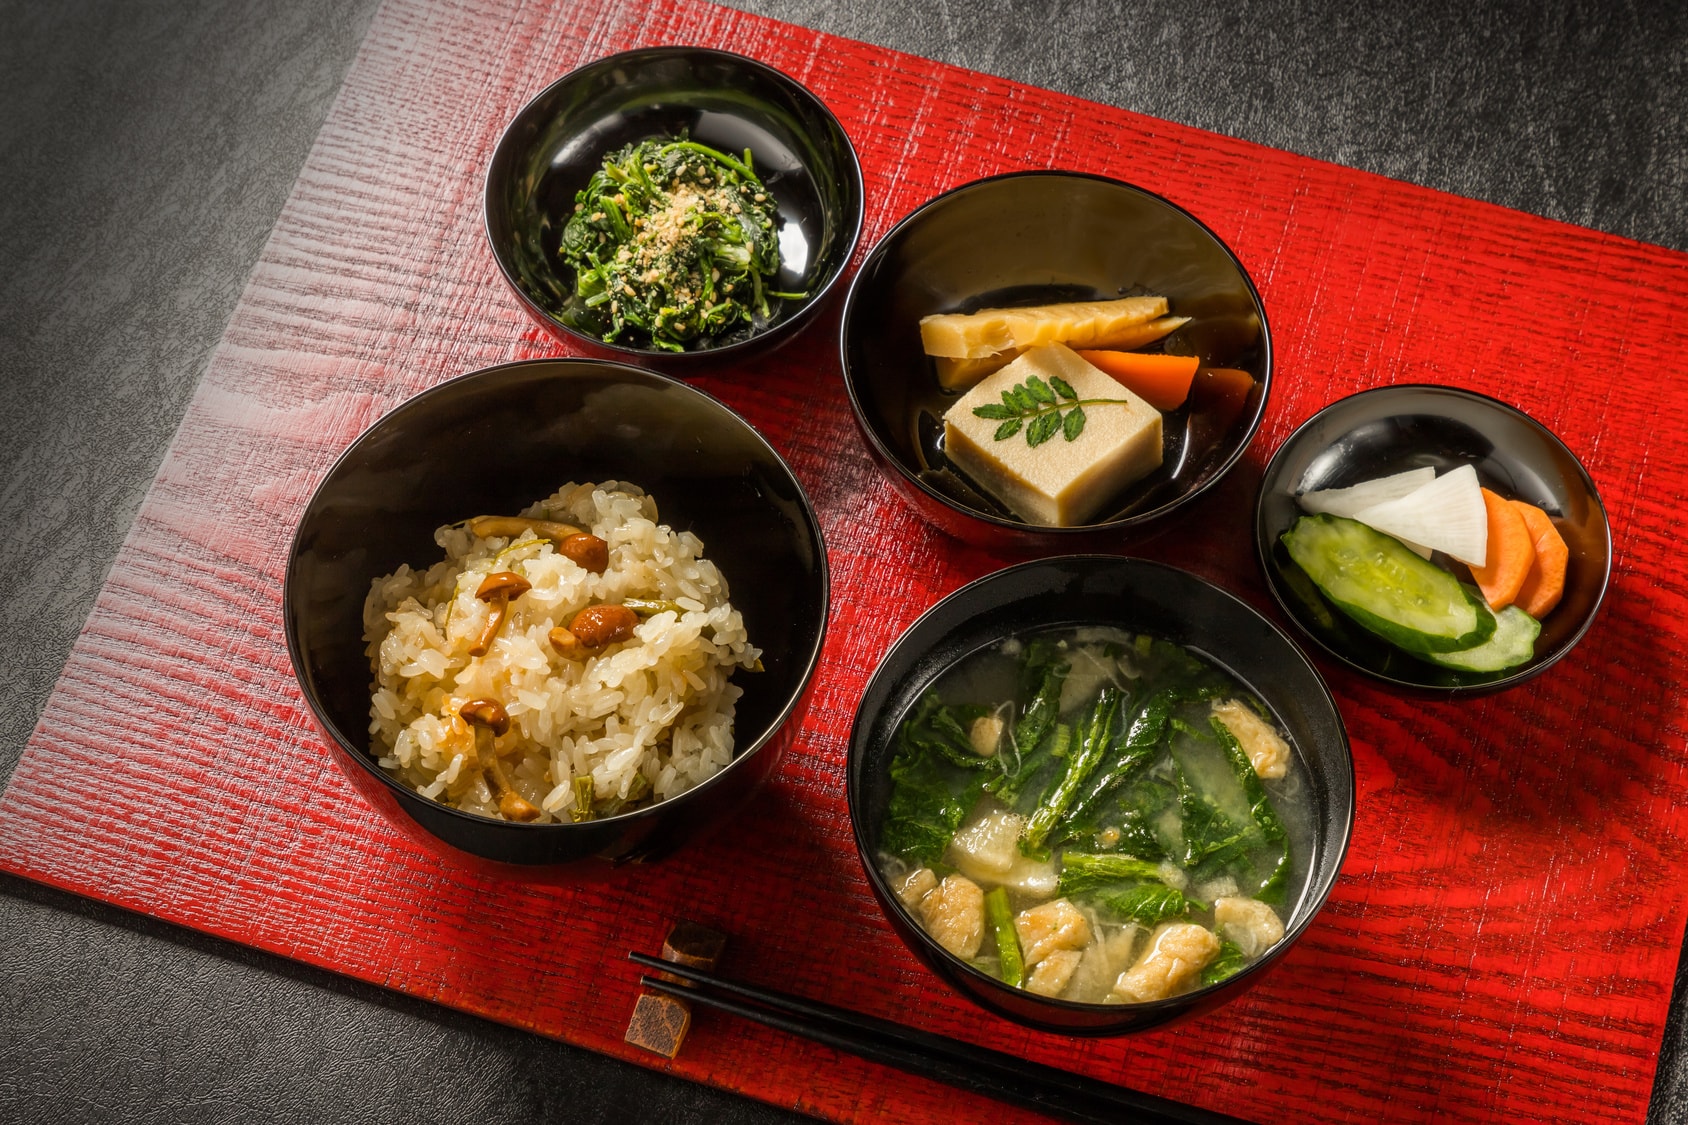 日本の伝統的 食 文化である和食を解説 にほんご日和